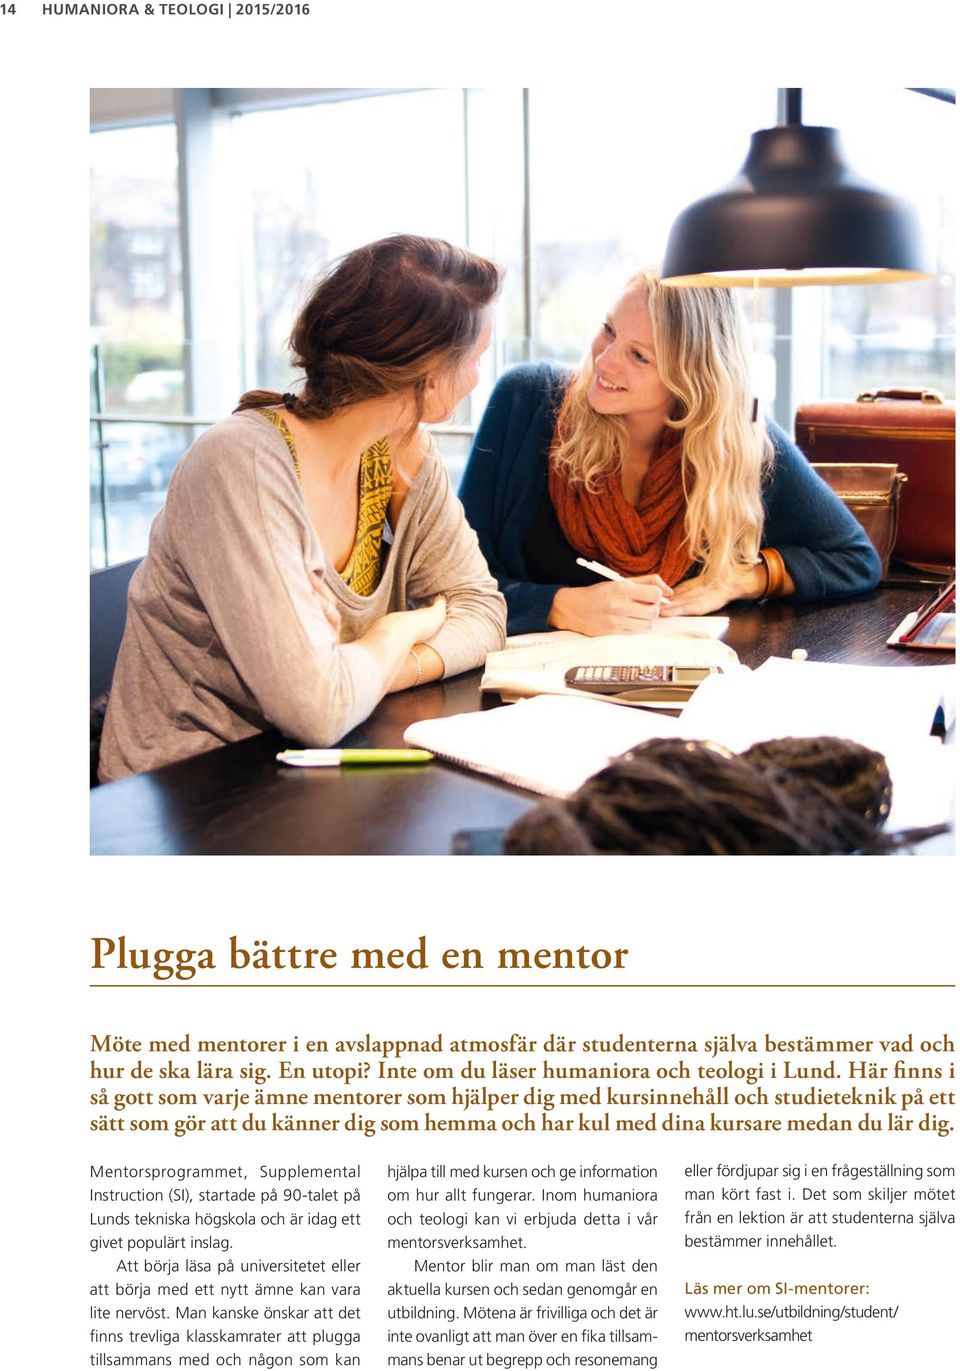 Mentorsprogrammet, Supplemental Instruction (SI), startade på 90-talet på Lunds tekniska högskola och är idag ett givet populärt inslag.